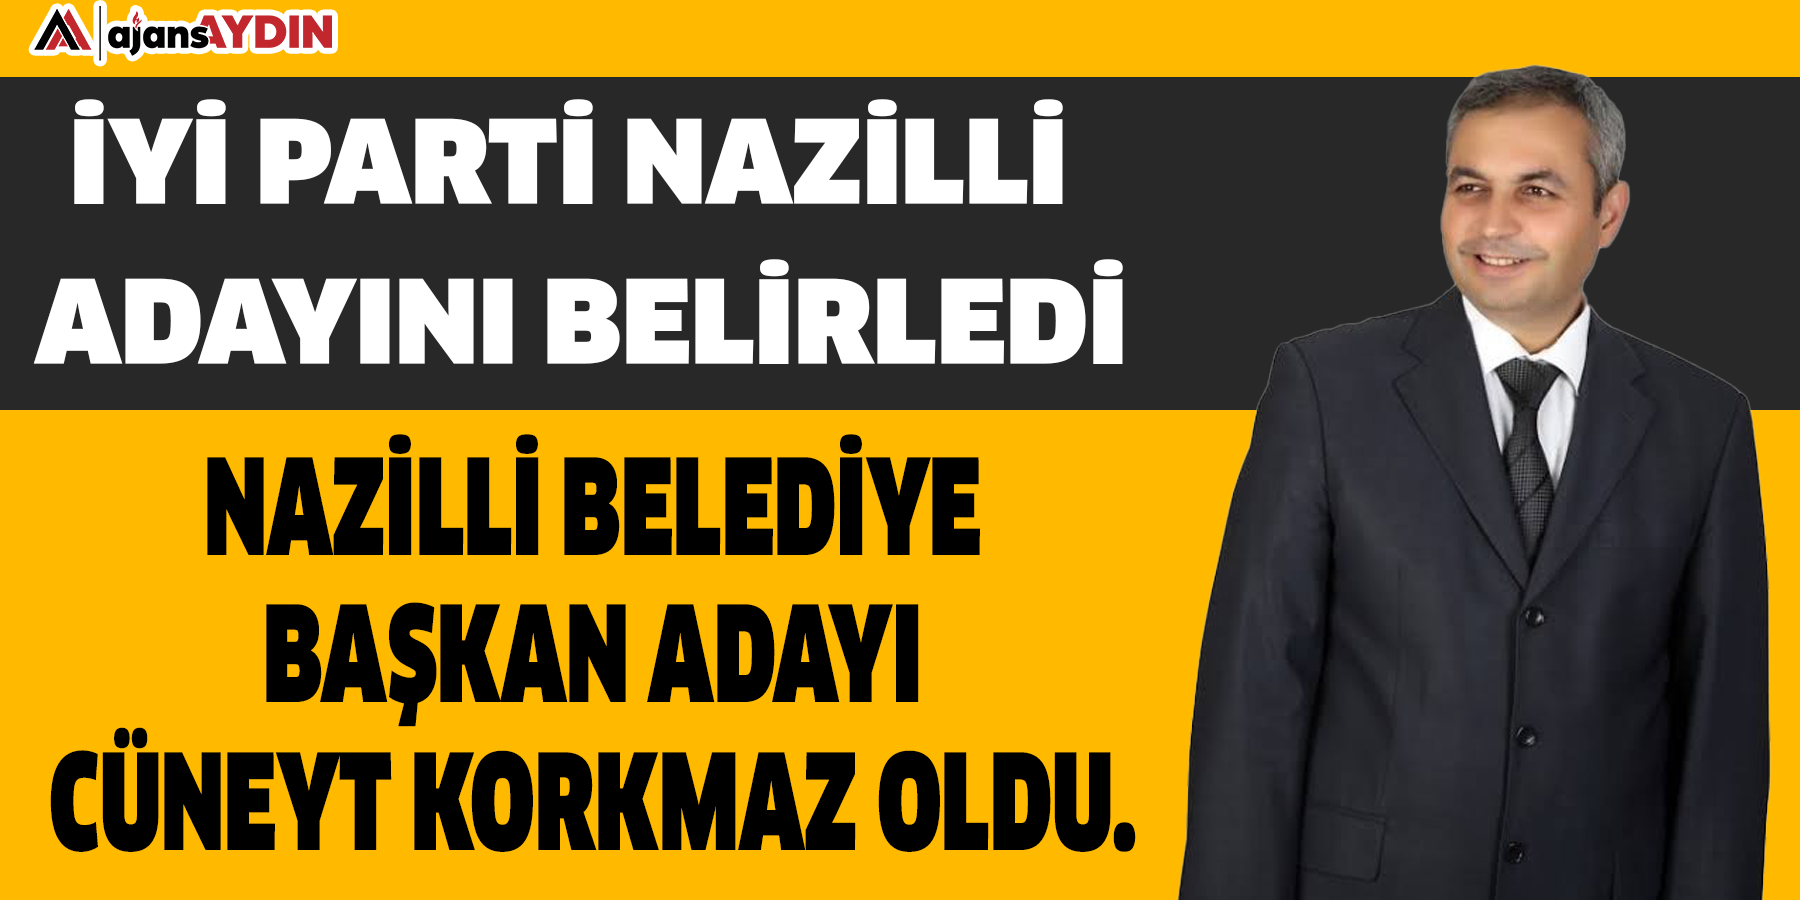 İYİ Parti Nazilli adayını belirledi: Nazilli Belediye Başkan Adayı Cüneyt Korkmaz old